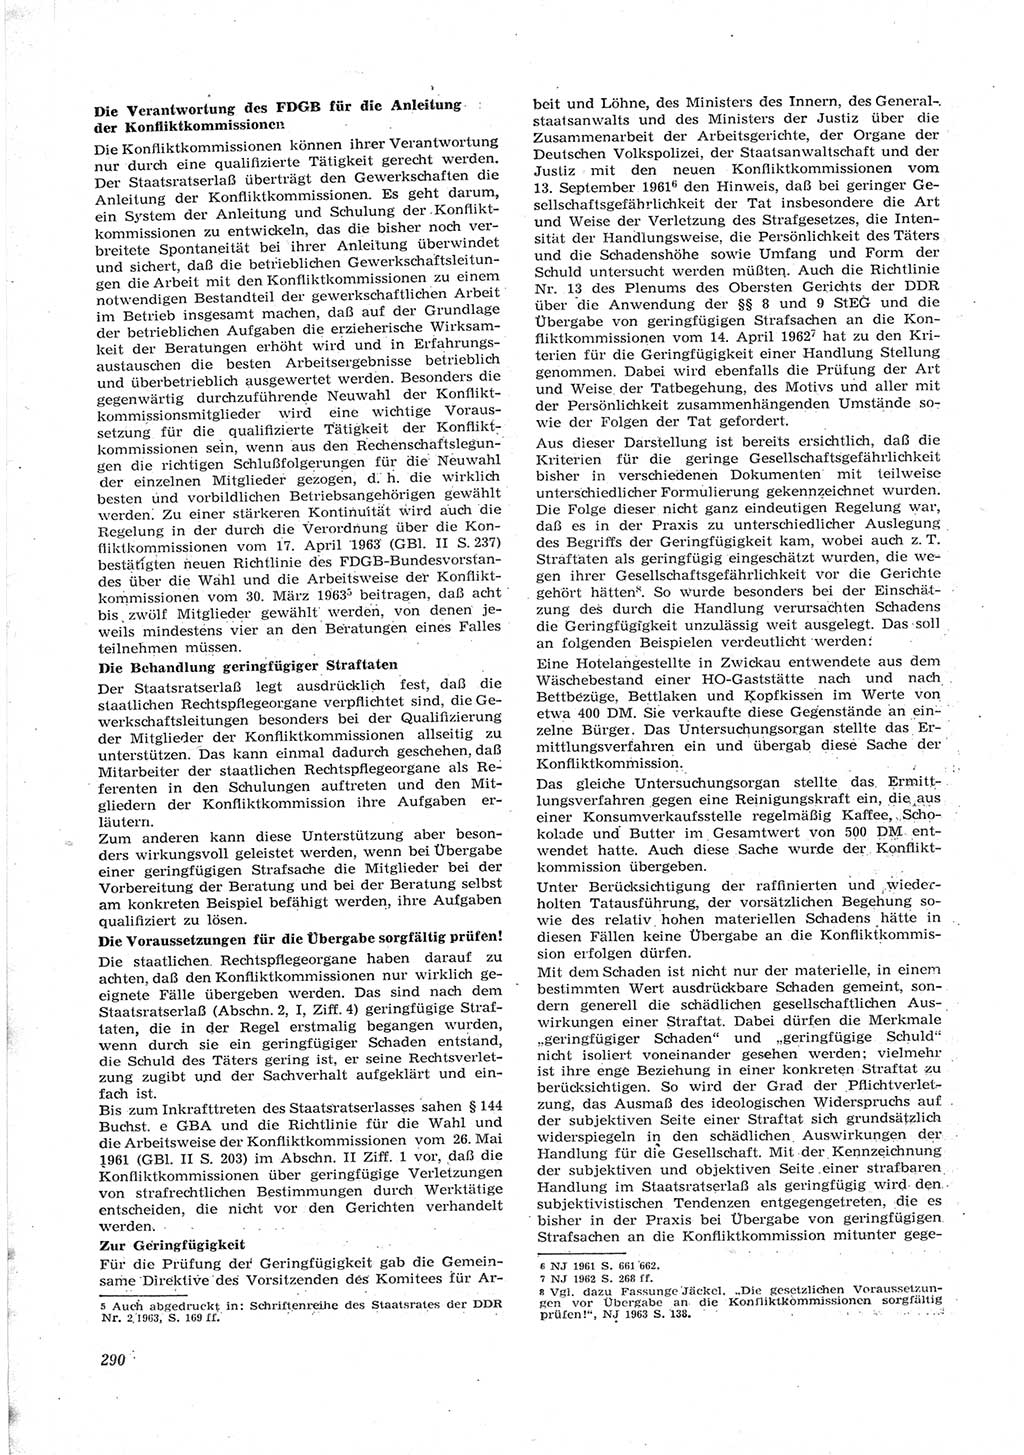 Neue Justiz (NJ), Zeitschrift für Recht und Rechtswissenschaft [Deutsche Demokratische Republik (DDR)], 17. Jahrgang 1963, Seite 290 (NJ DDR 1963, S. 290)